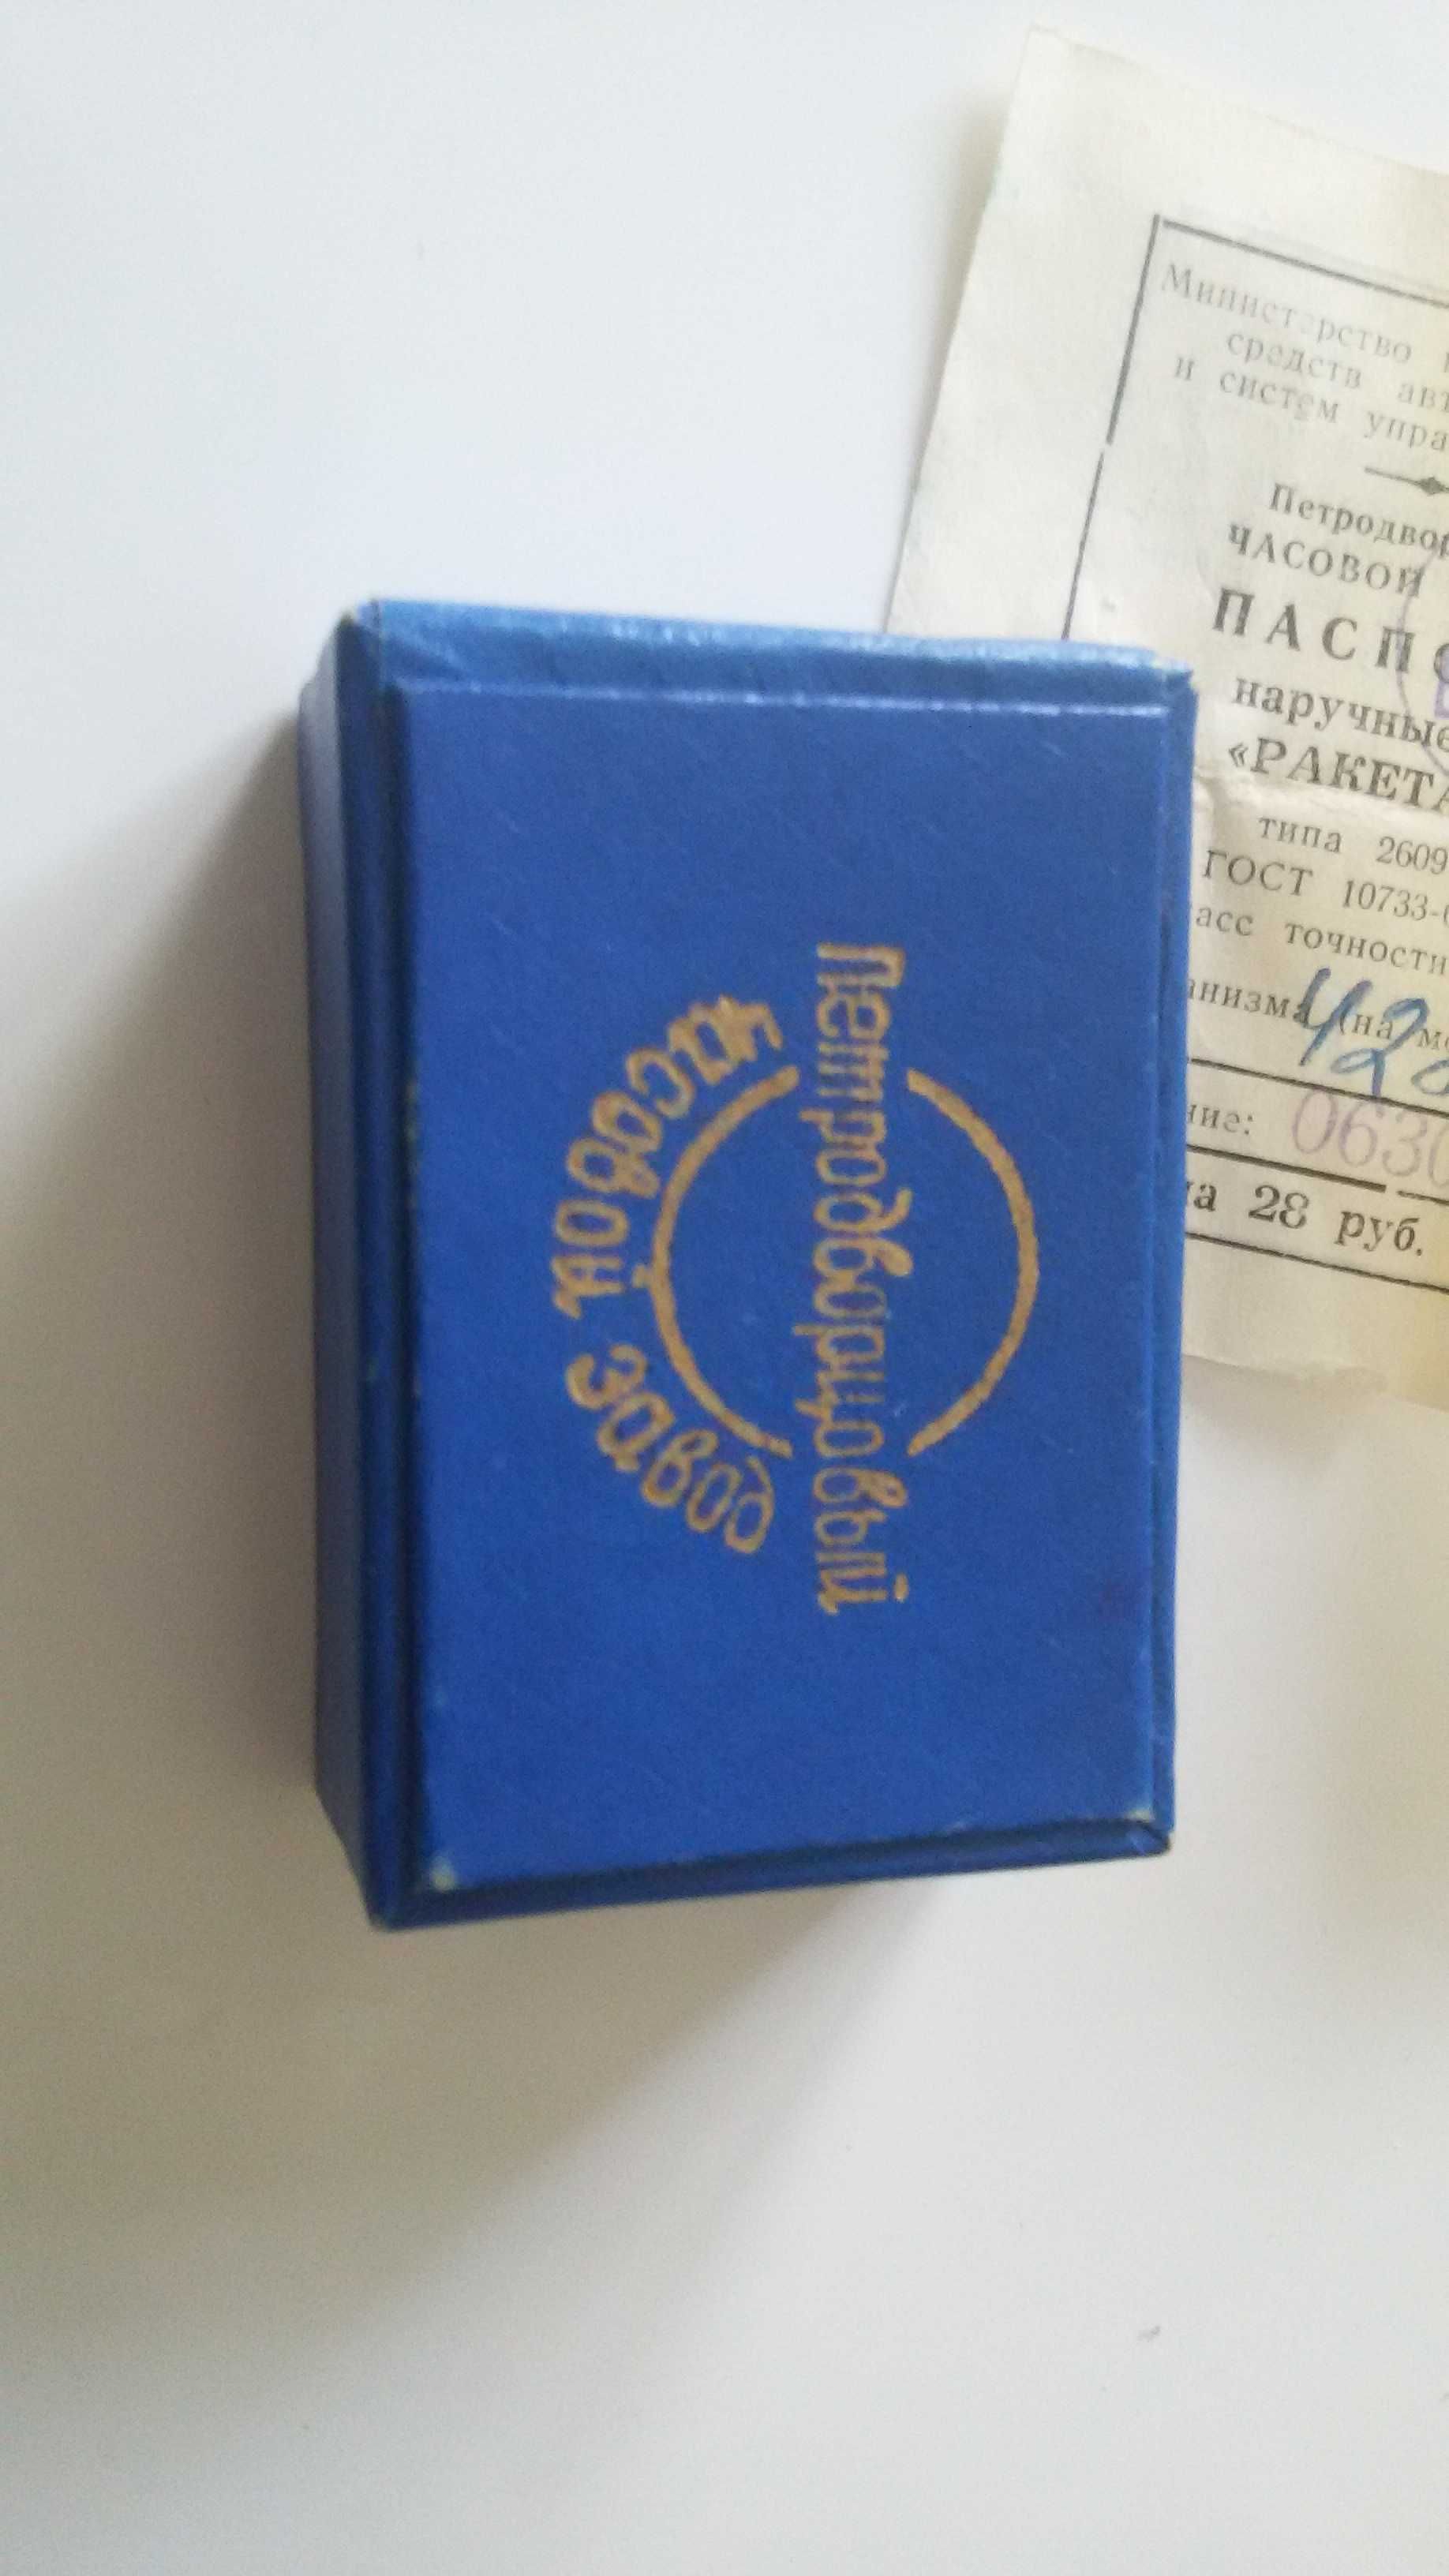 часы советские СССР Ракета 2609 в коробке с паспортом рабочие доставка